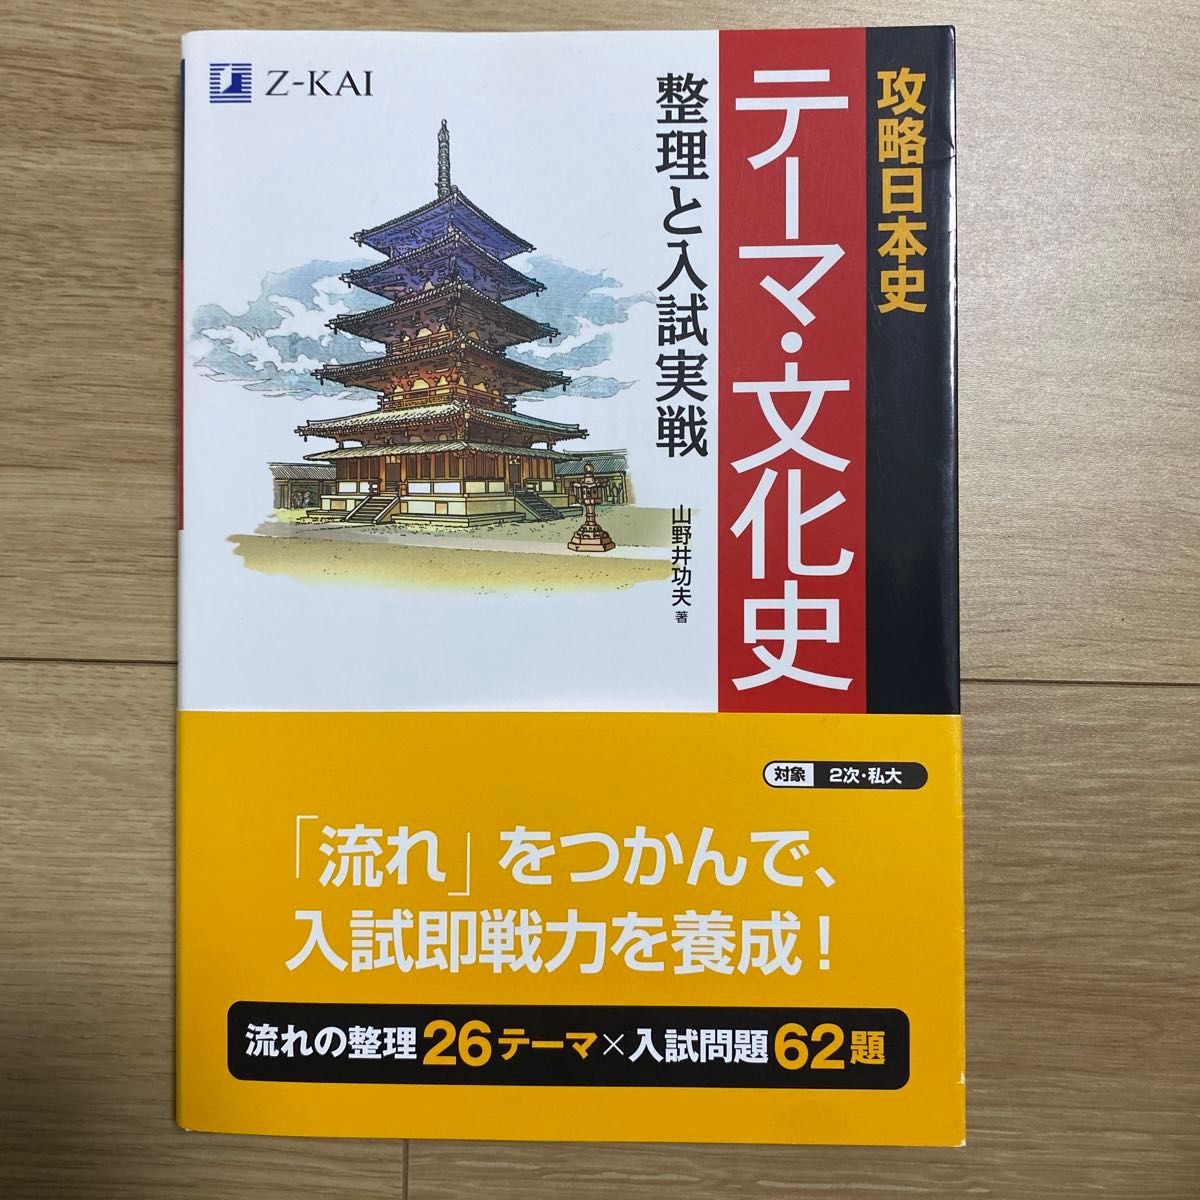 攻略日本史 テーマ・文化史 整理と入試実戦 Z-KAI